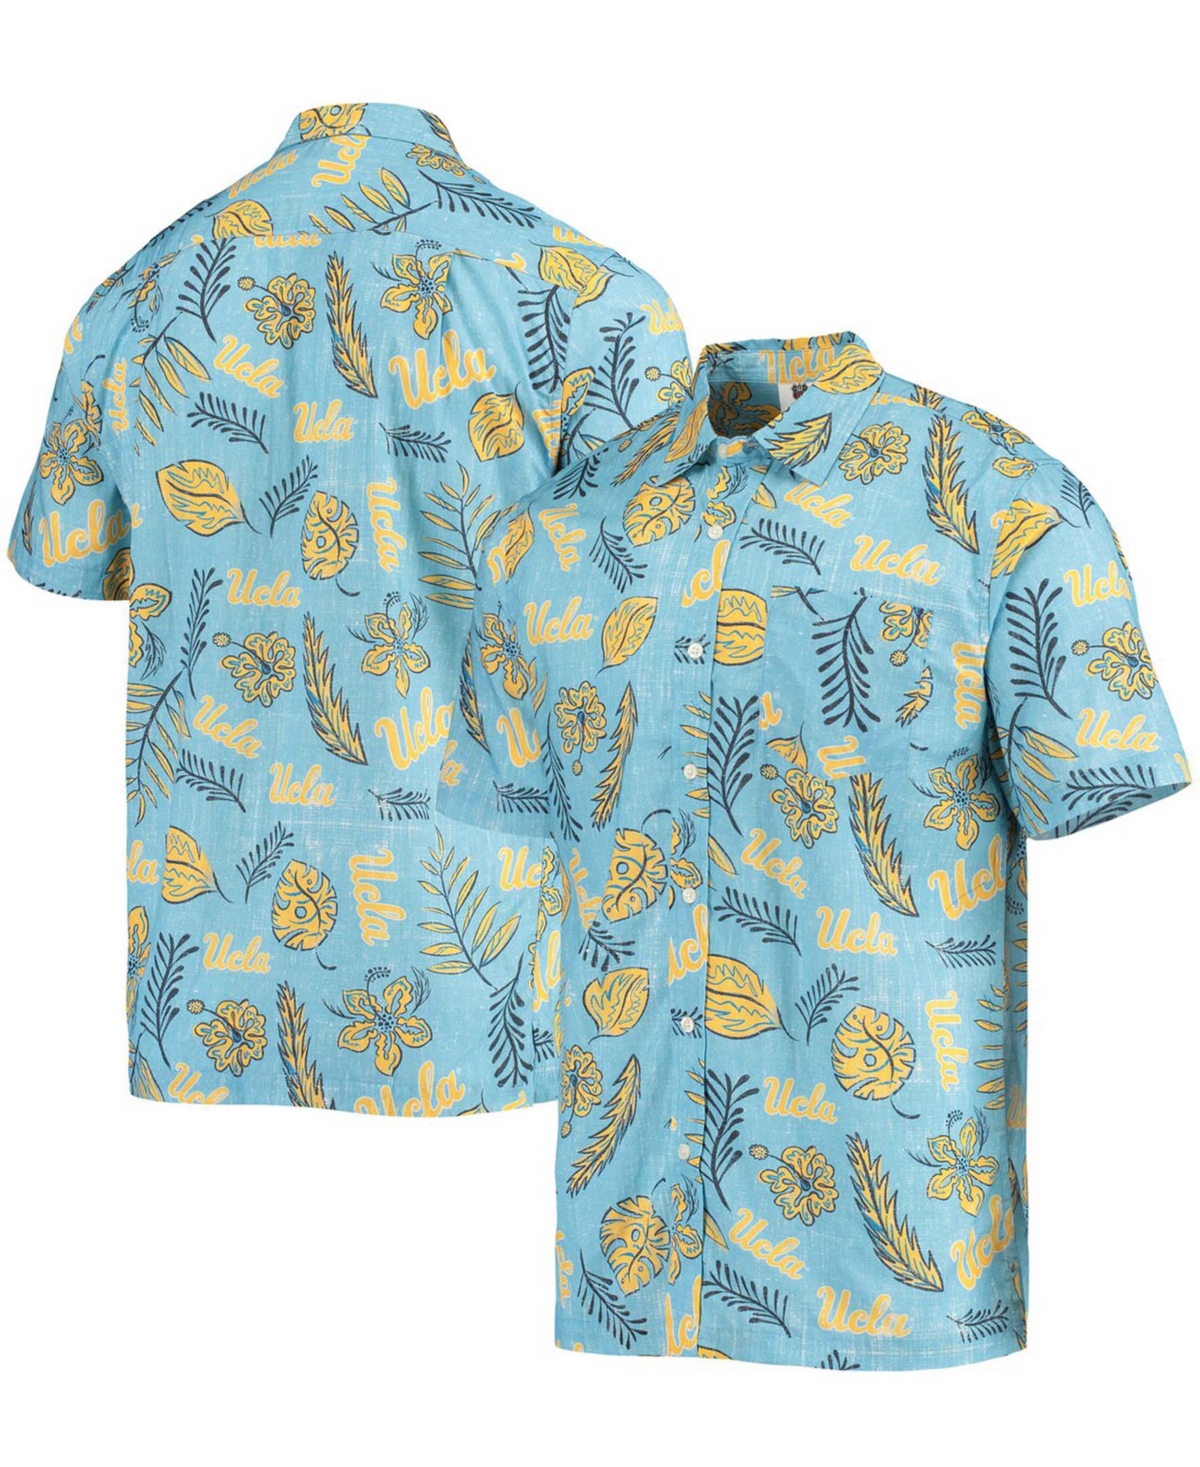 Wes & Willy Men's Light Blue Ucla Bruins Vintage-like Floral Button-up Shirt